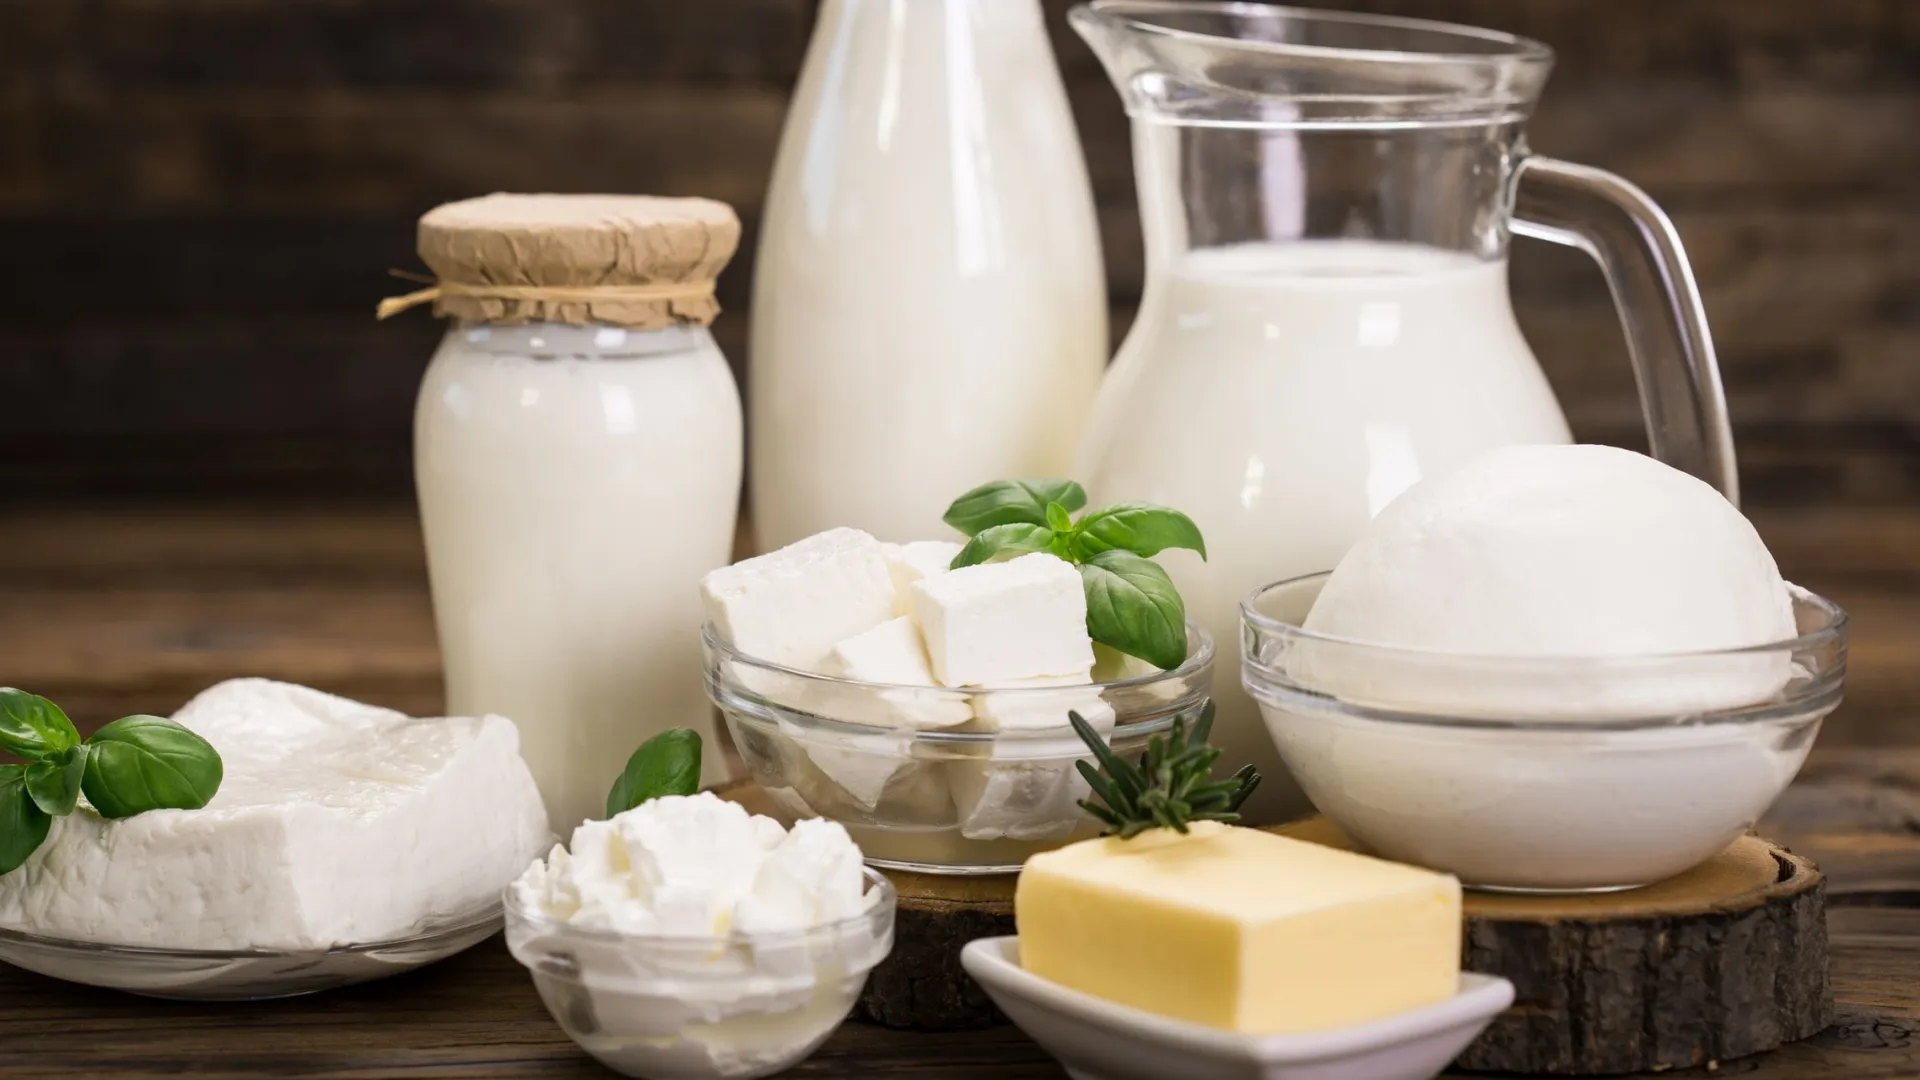 На ценниках должно быть указано, есть заменитель молочного жира в продукции. Фото: pilipphoto/Shutterstock/Fotodom